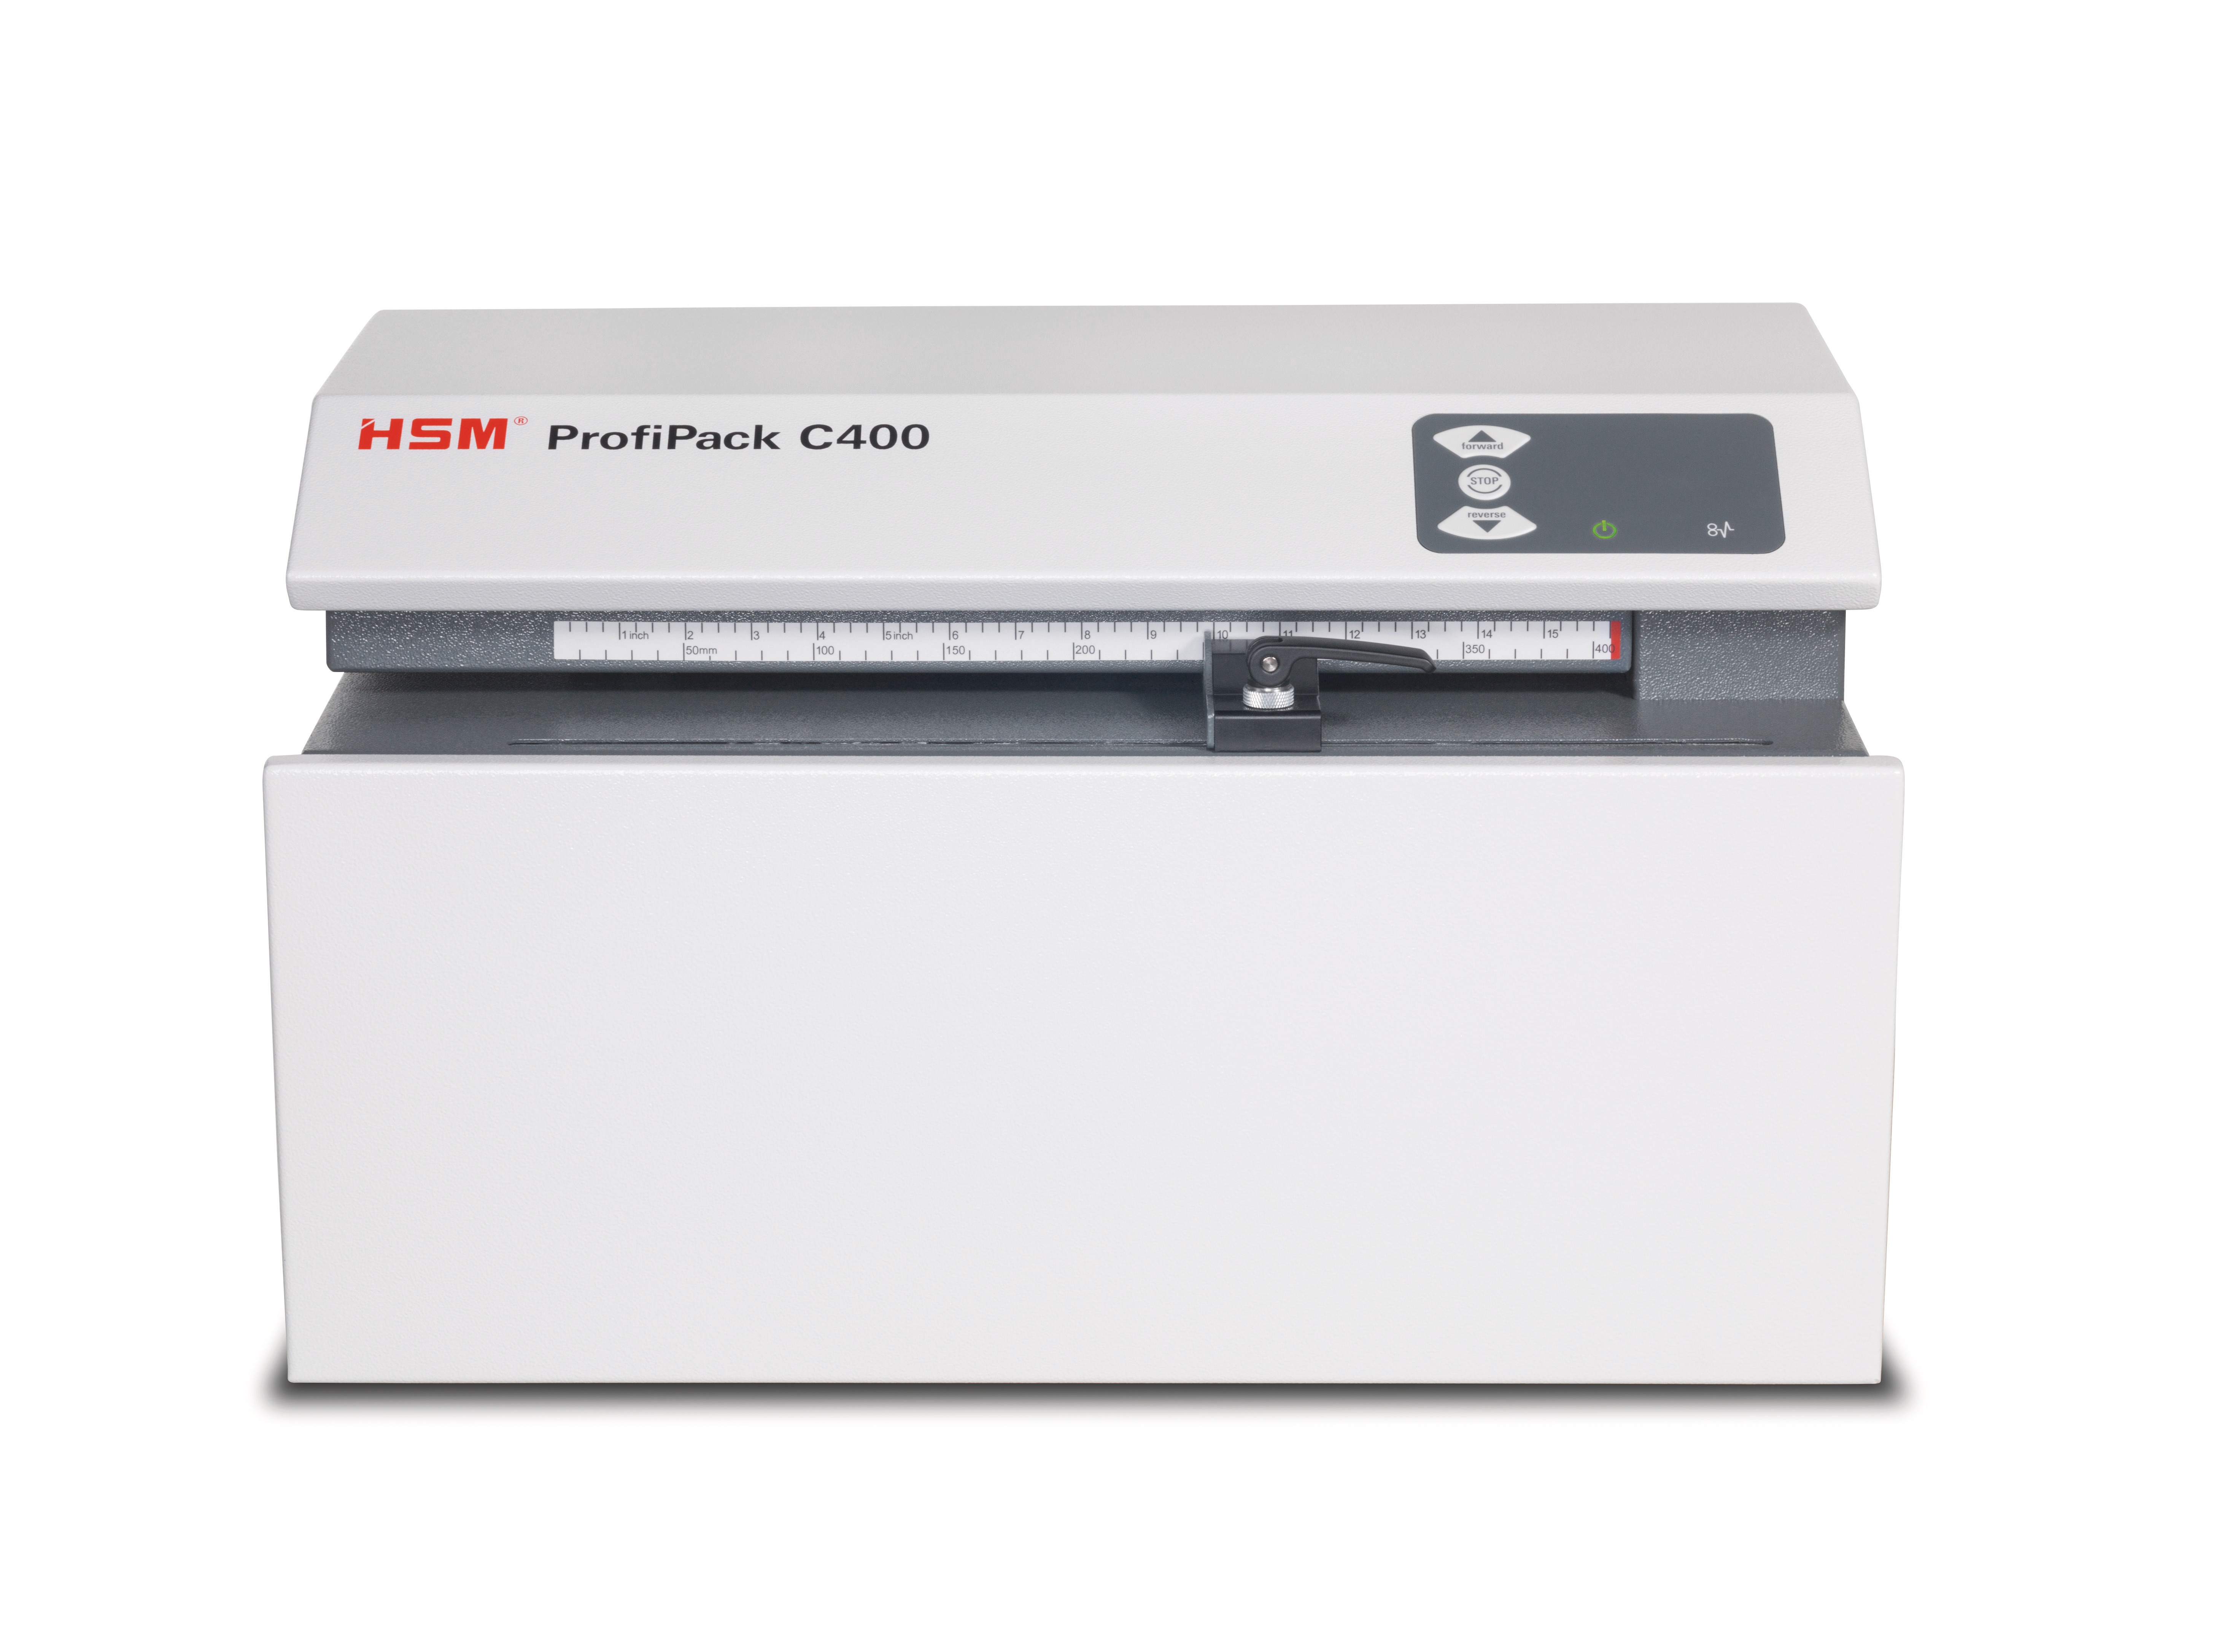 HSM Machine de calage d'emballage 1528134 ProfiPack C400